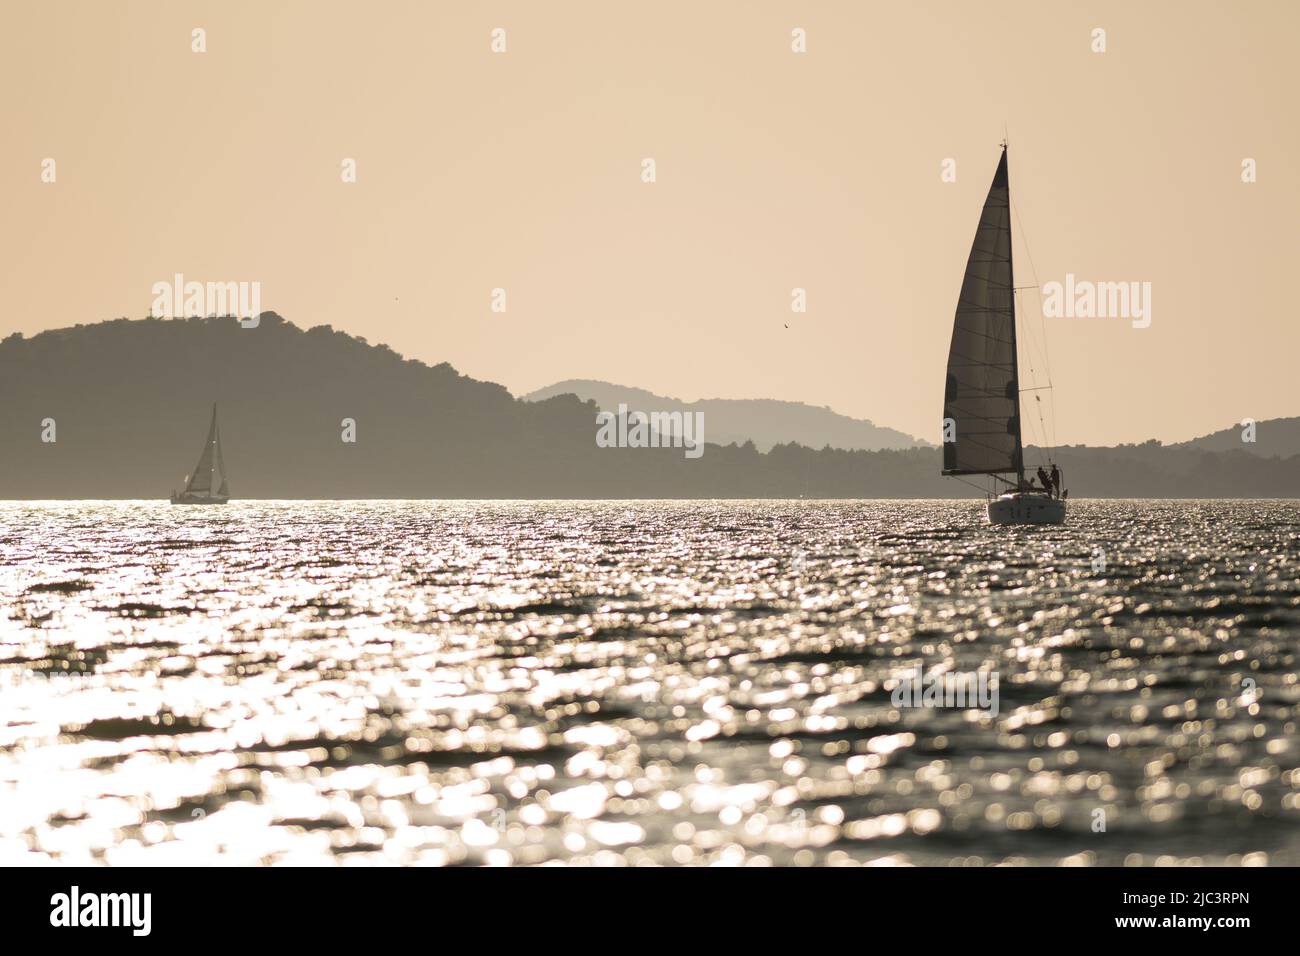 Sailing yachts at sea during sunset Stock Photo